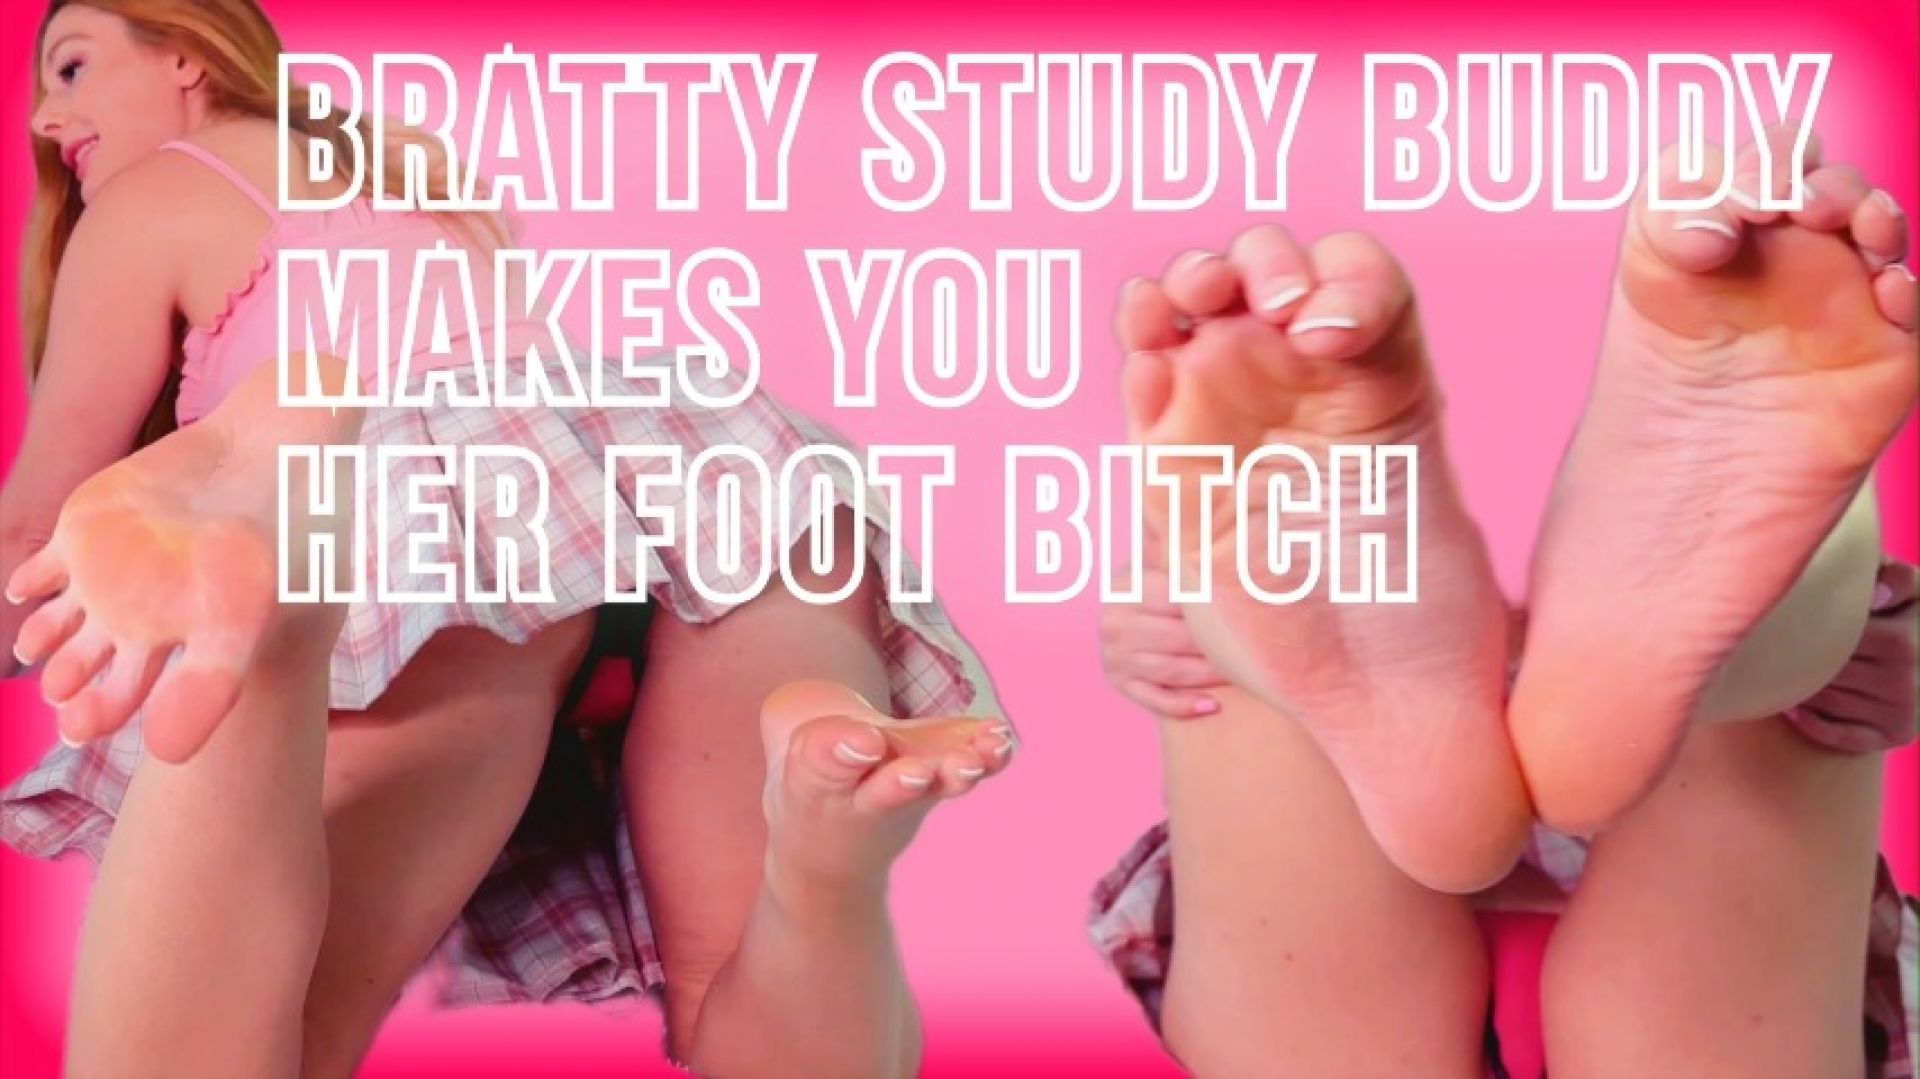 Bratty Study Buddy's Foot Bitch